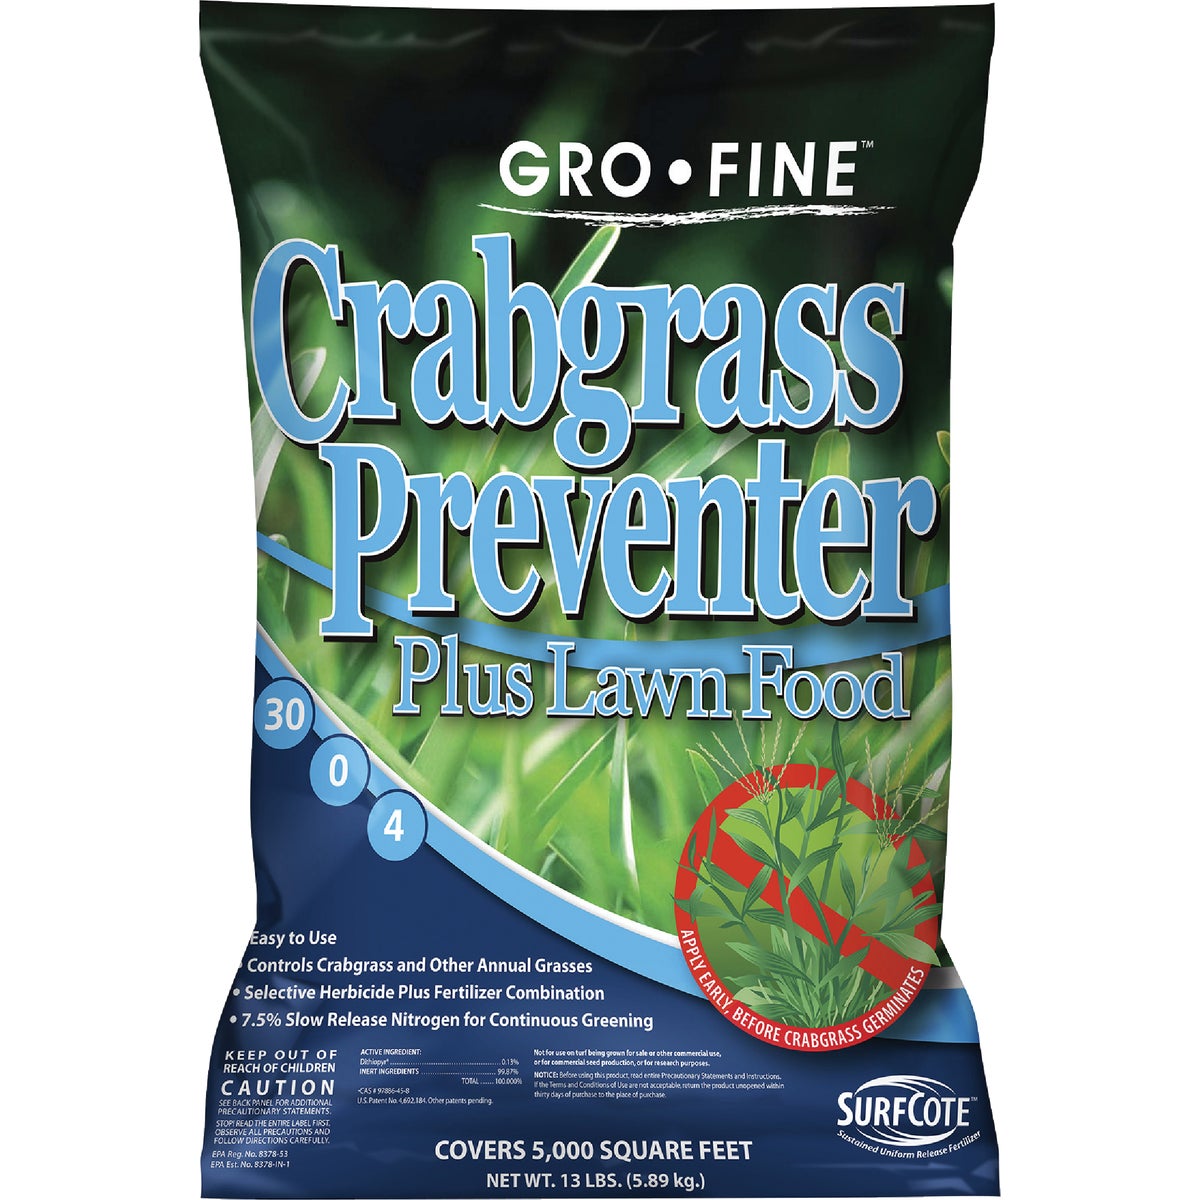 Item 768066, Crabgrass preventer plus lawn food.